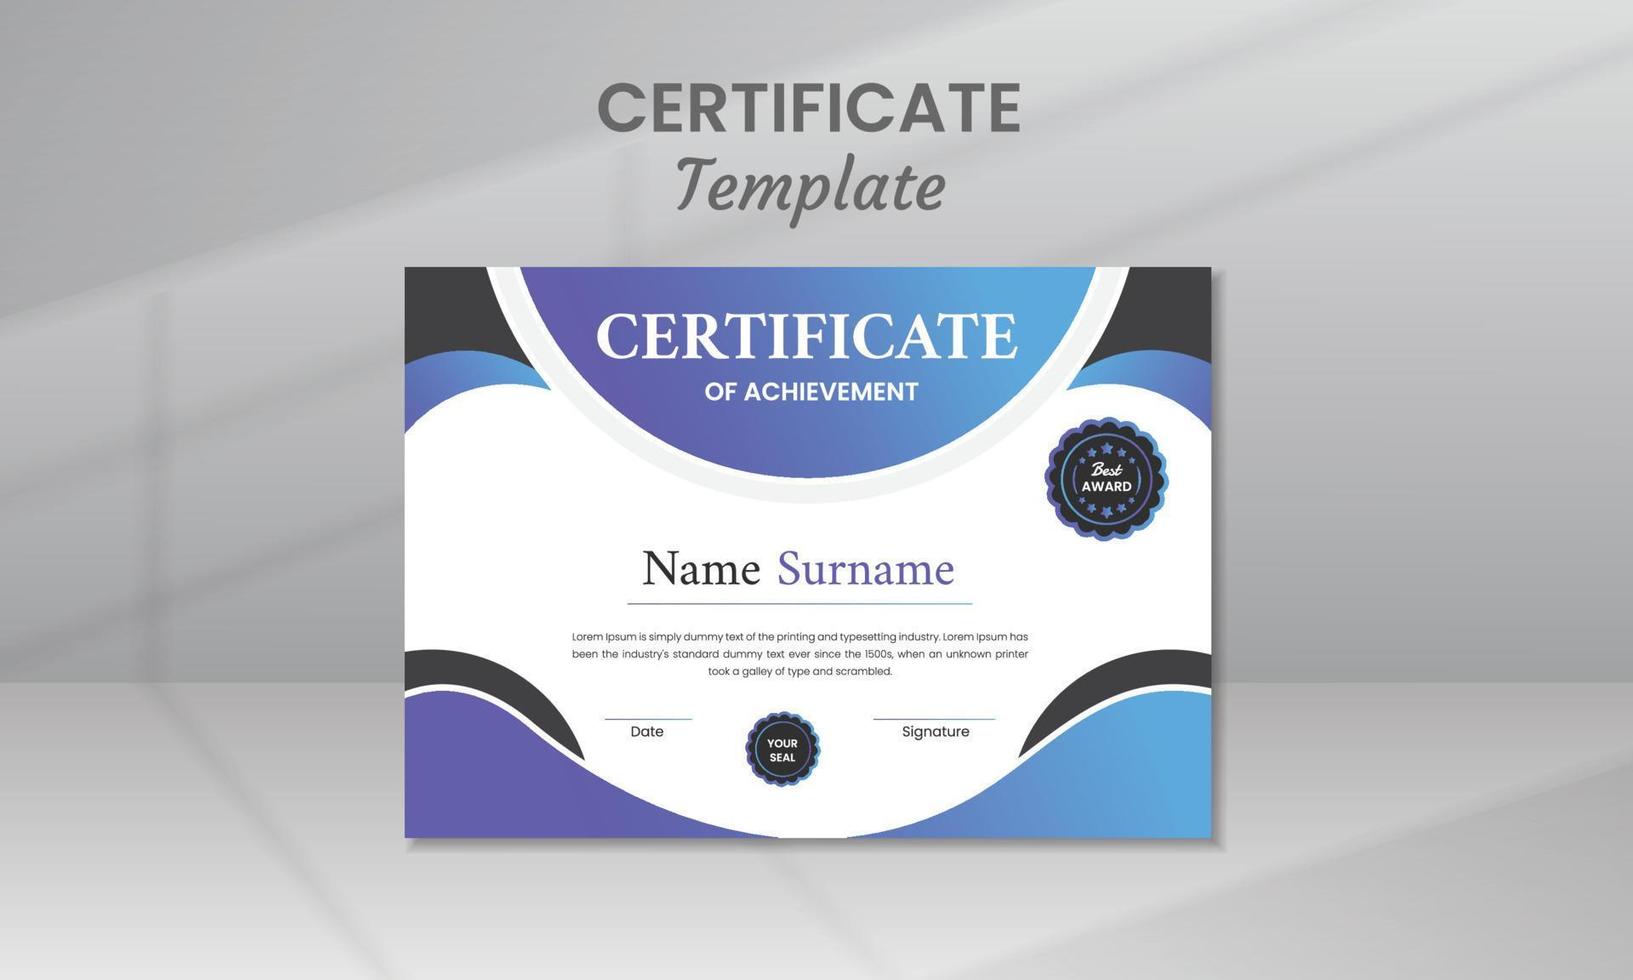 Modern Certificate Template vector